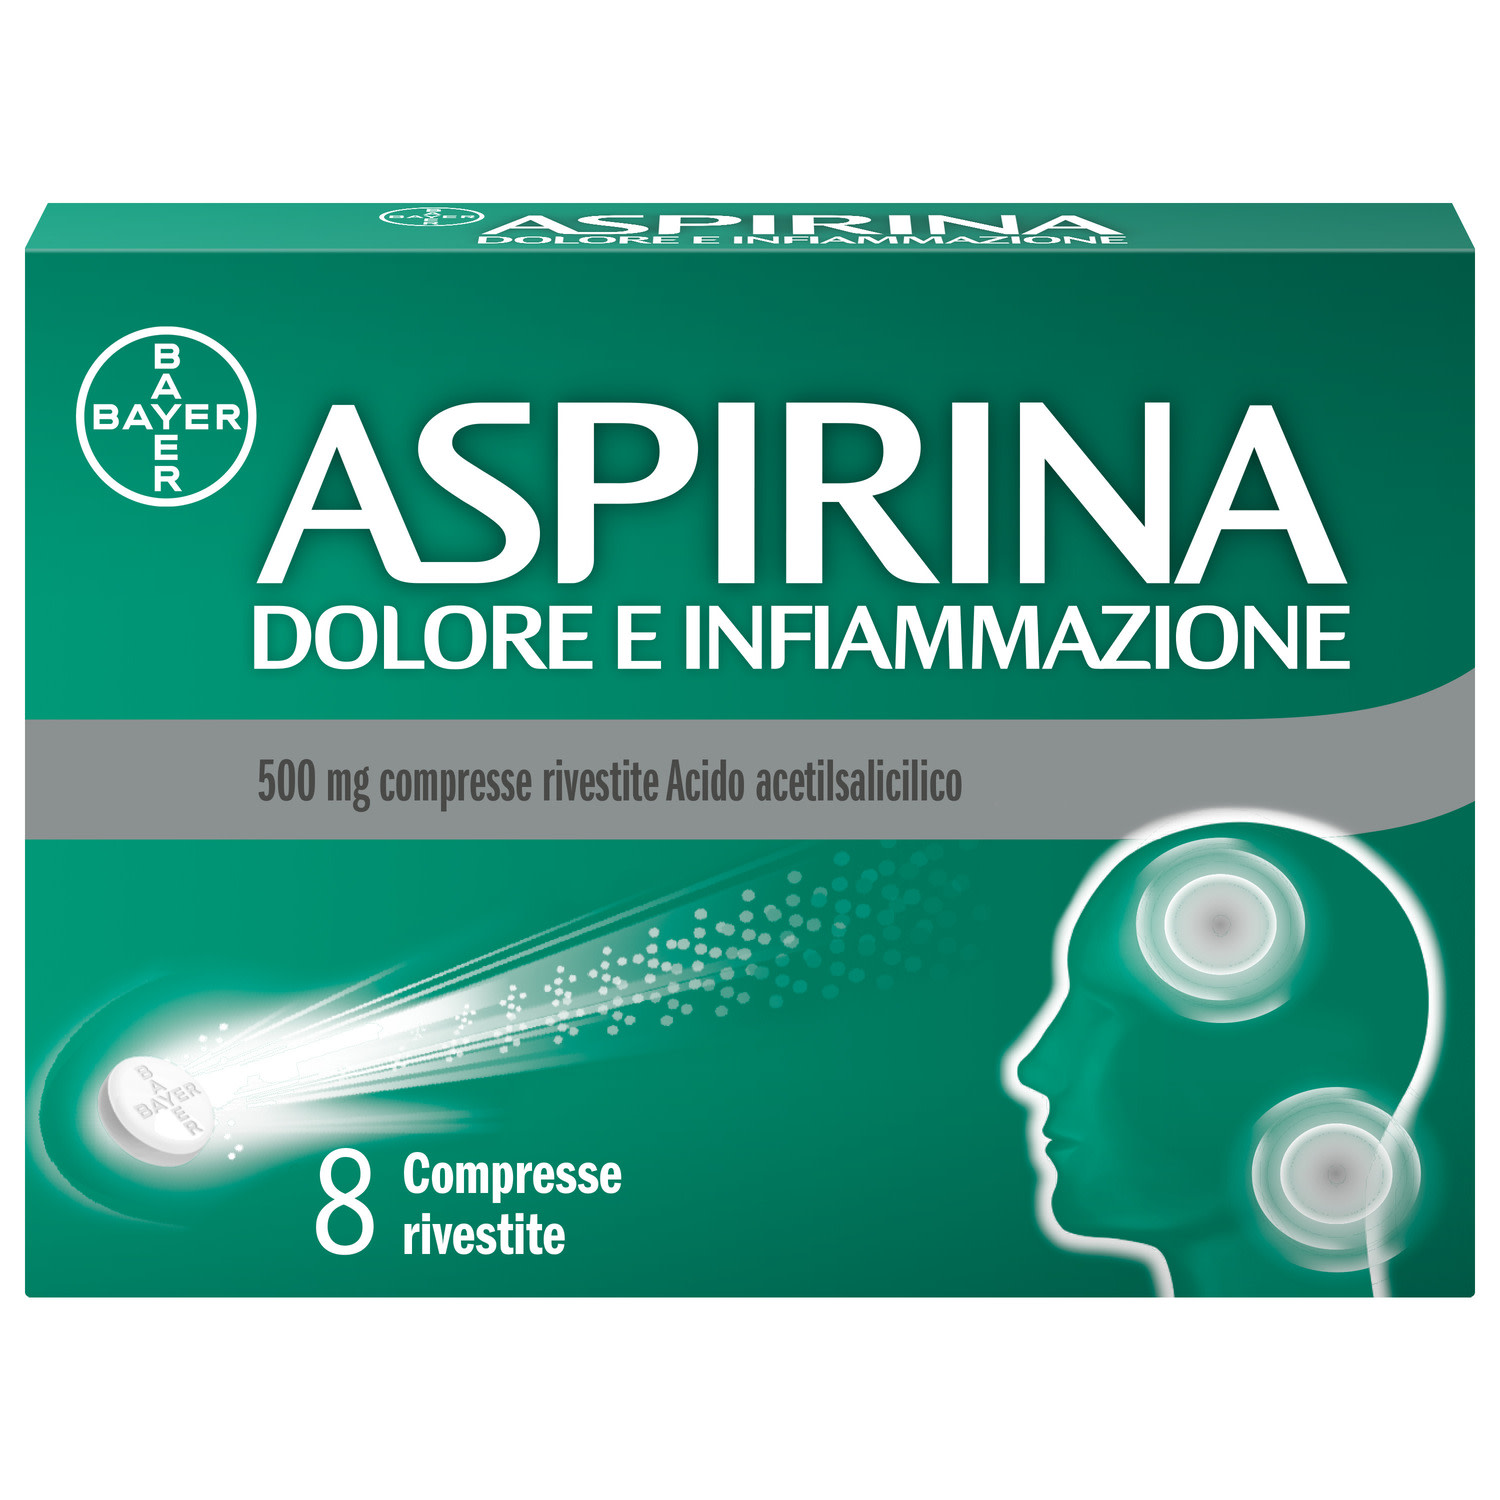 041962010 - ASPIRINA DOLORE E INFIAMMAZIONE*8 cpr riv 500 mg - 7857622_1.jpg